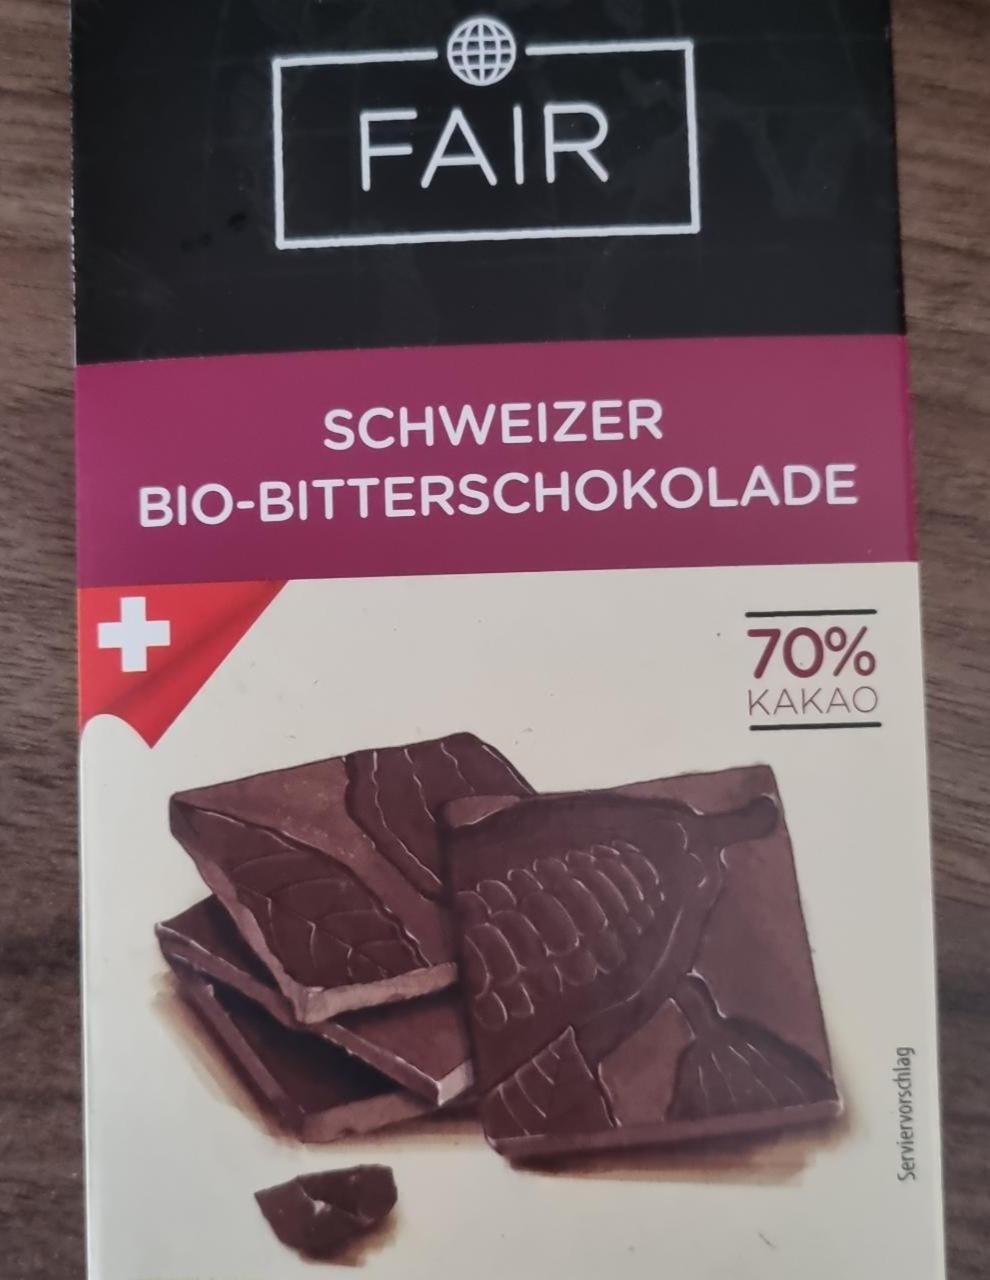 Fotografie - Schweizer Bio-Bitterschokolade Fair